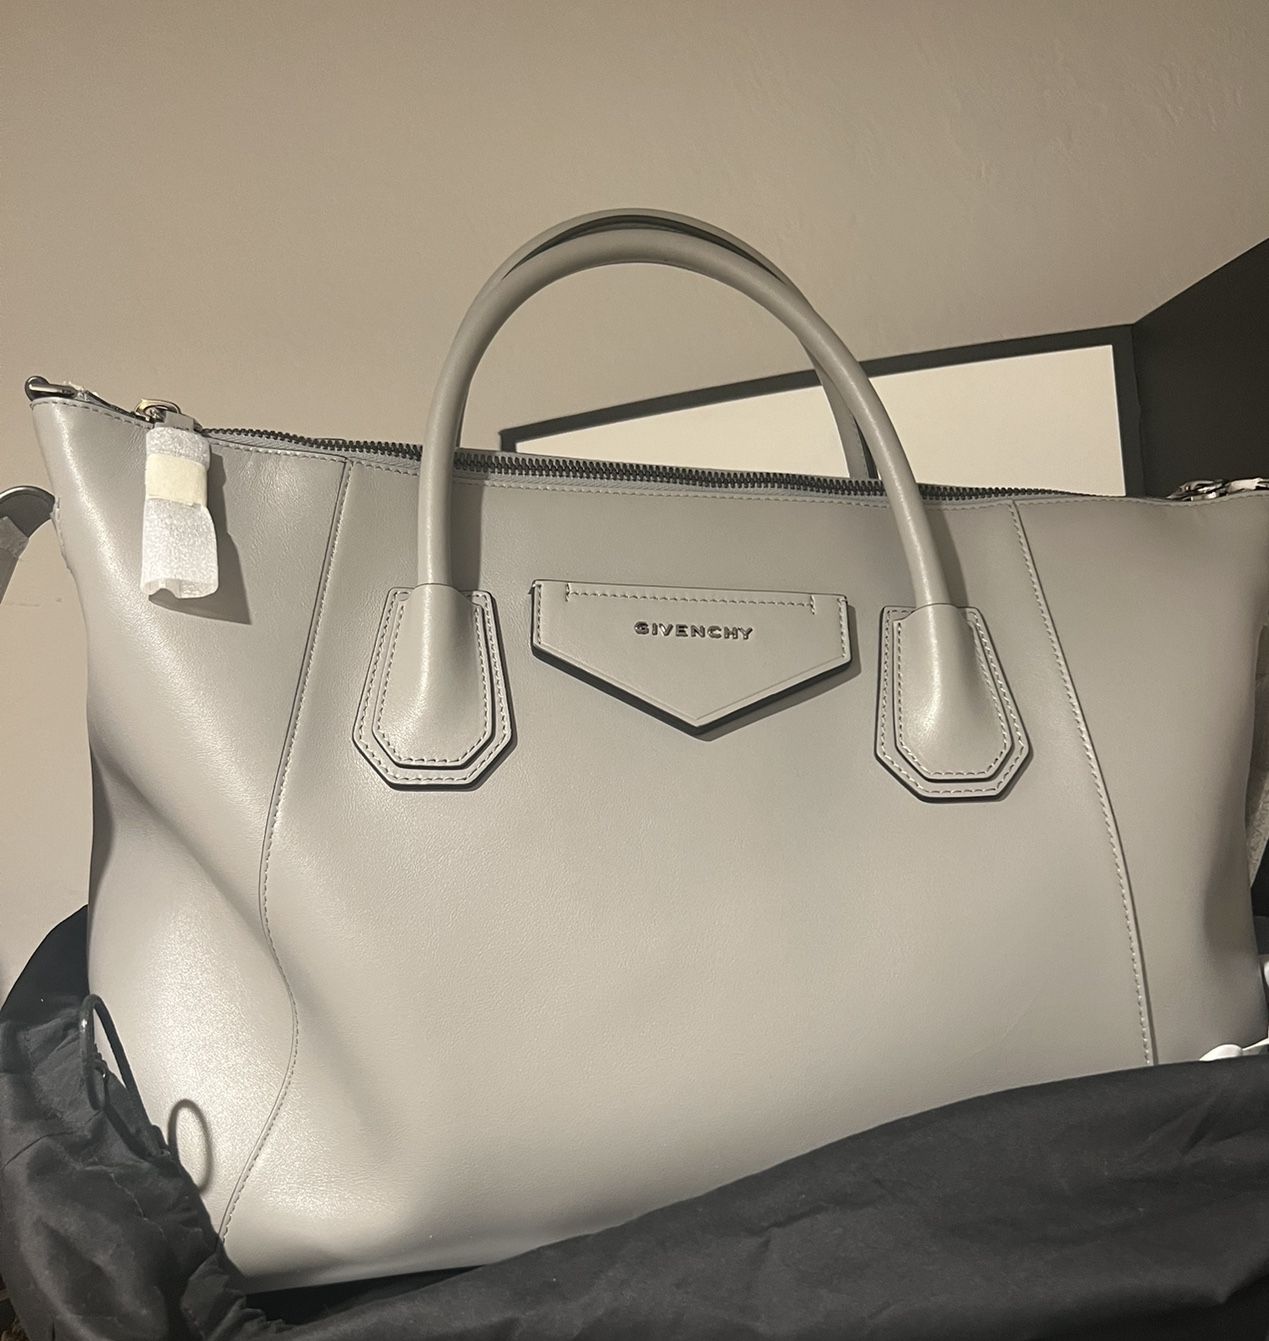 Givenchy purse 